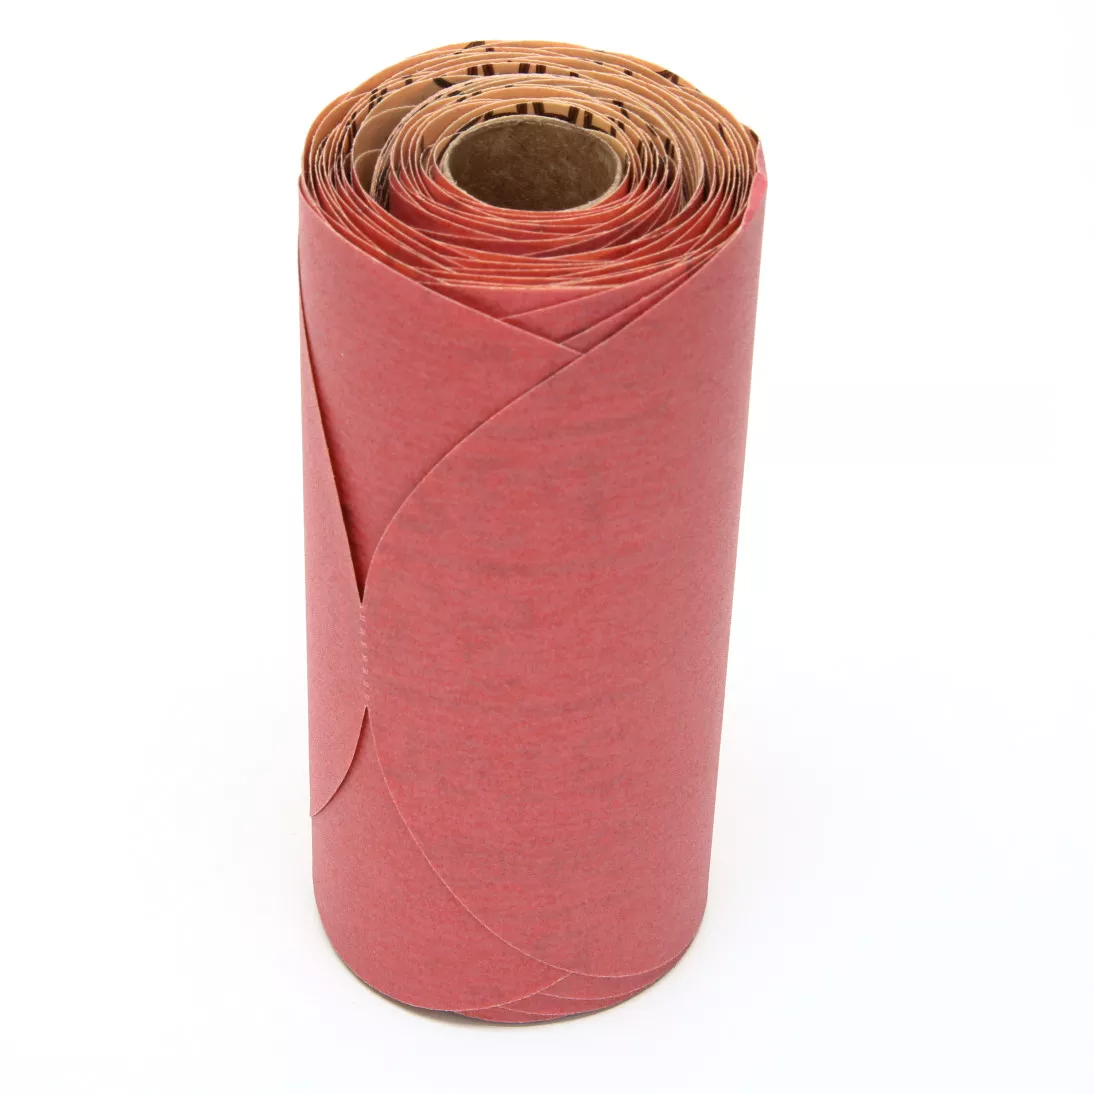 3M™ Red Abrasive Stikit™ Disc, 01109, 6 in, P320 grade, 100 discs per
roll, 6 rolls per case